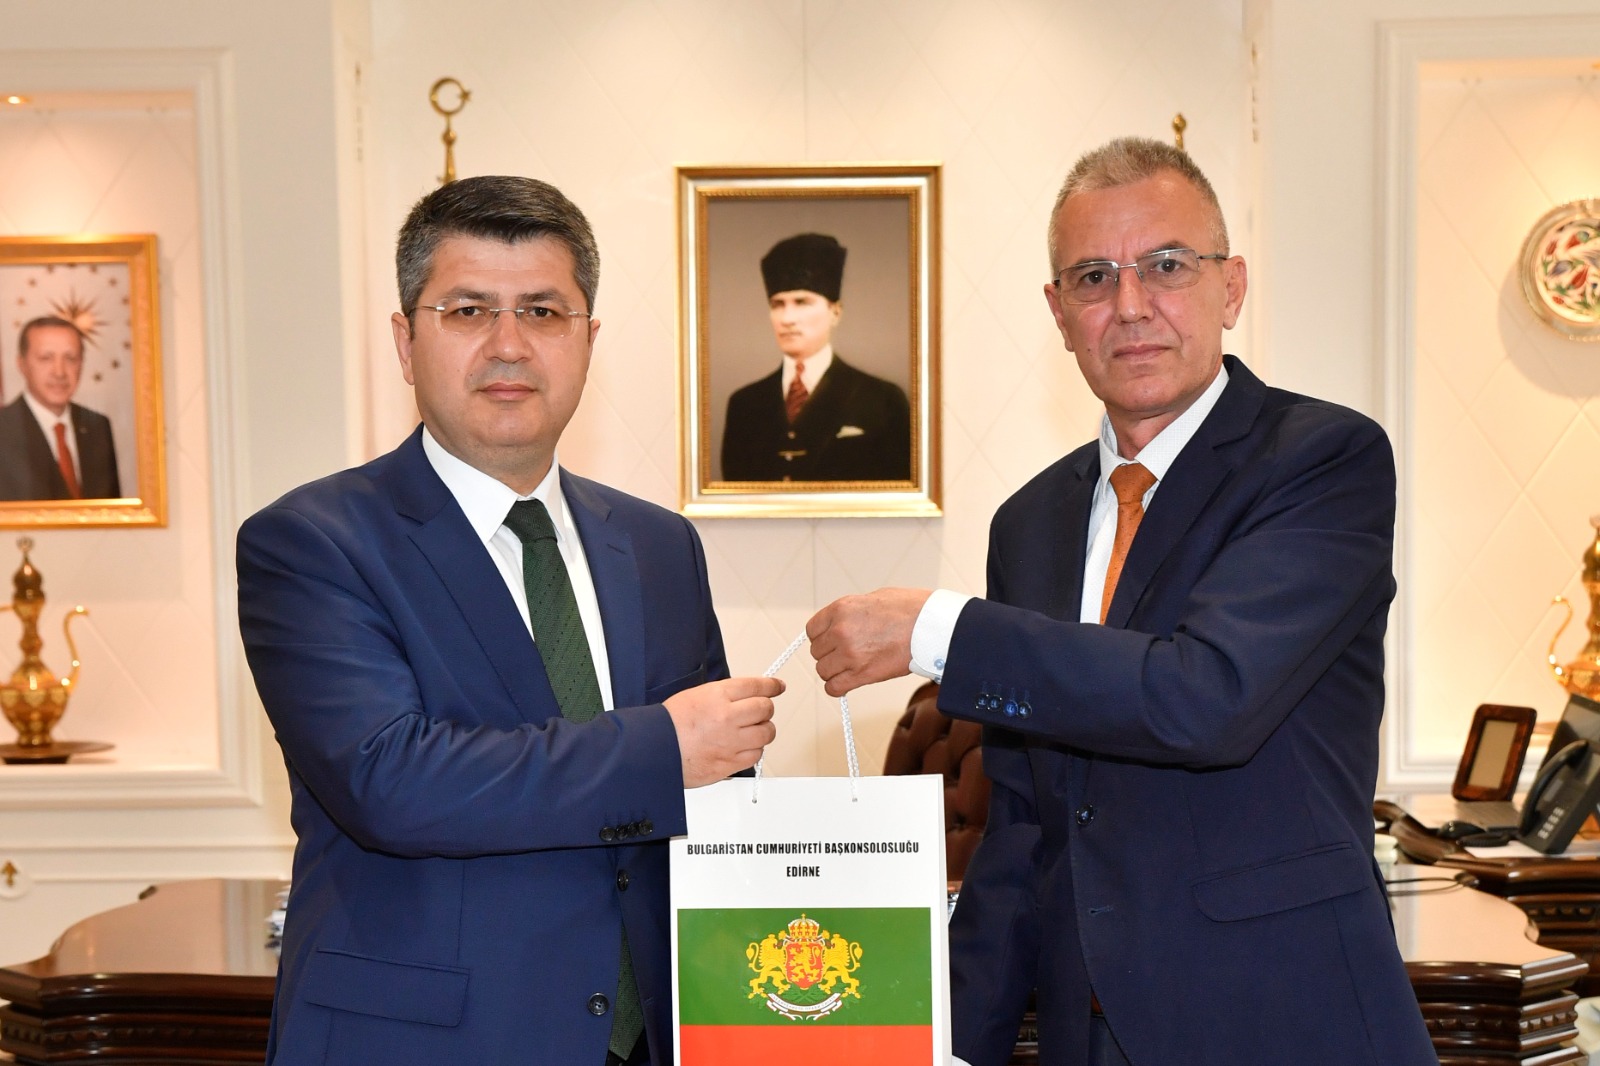 Генералният консул Борислав Димитров се срещна с новоназначения областен управител на Одрин Хюсеин Кюршат Кърбъйък